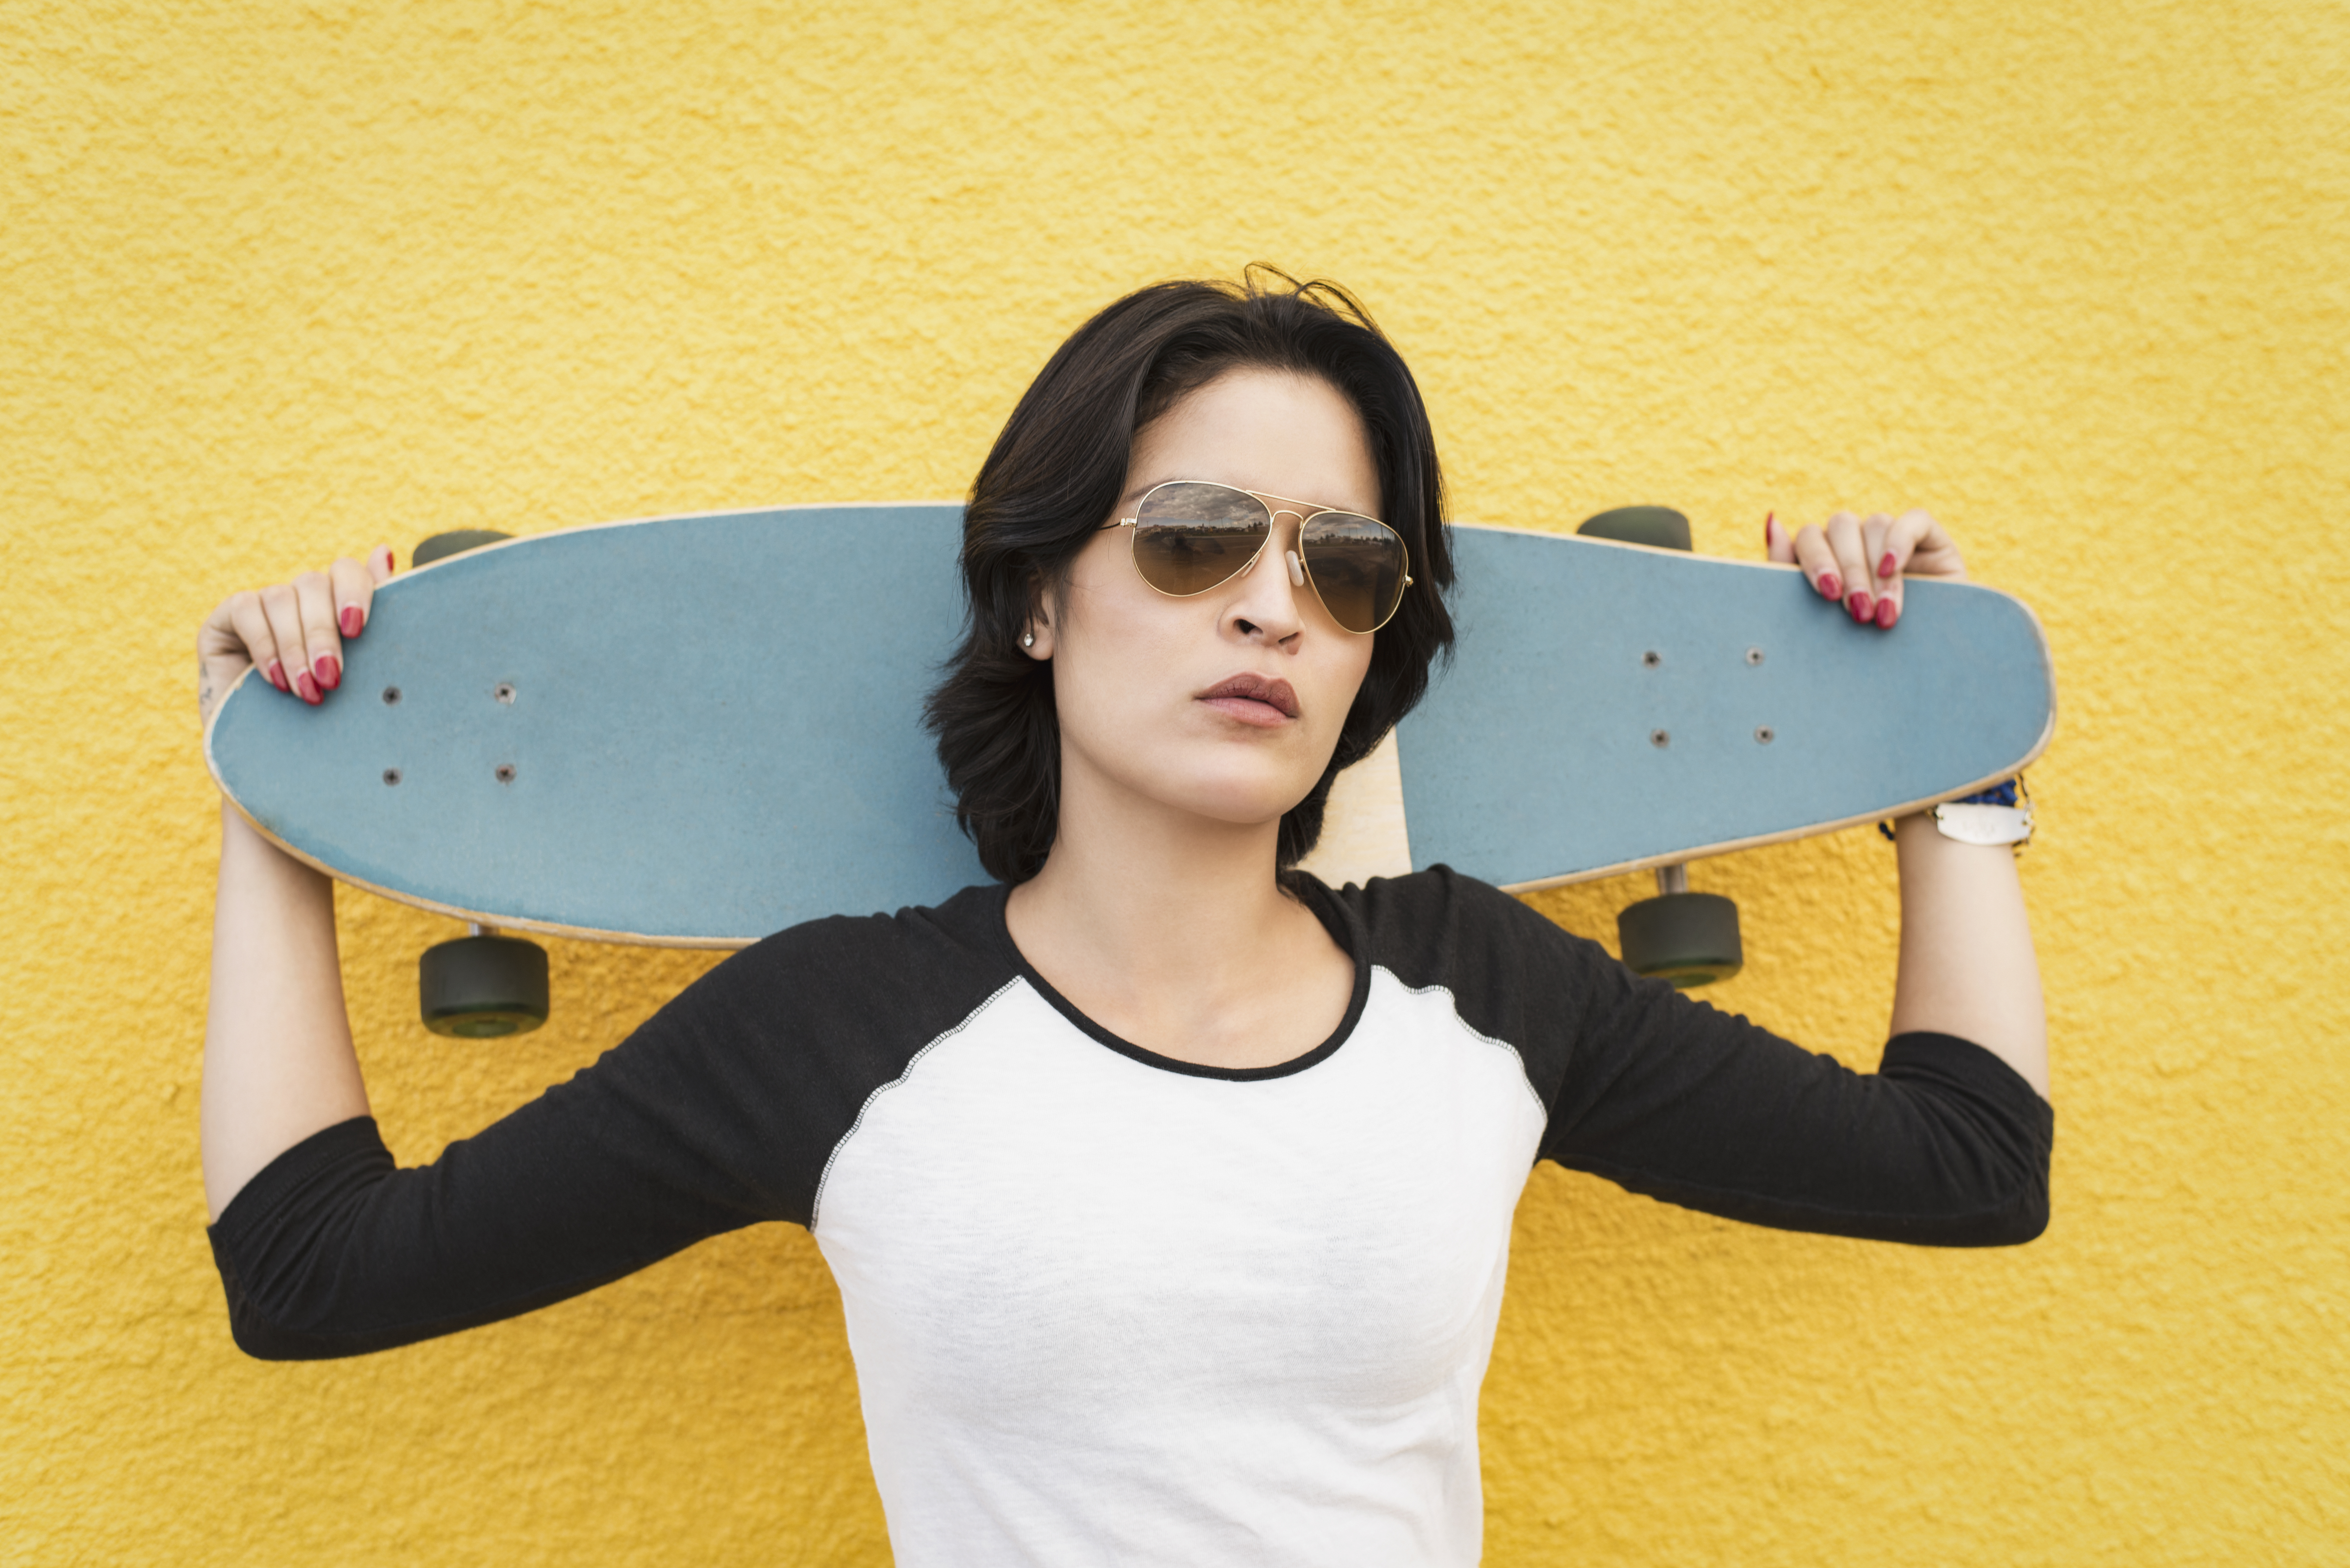 Junge lateinamerikanische Frau mit Skateboard vor einer gelben Wand stehend